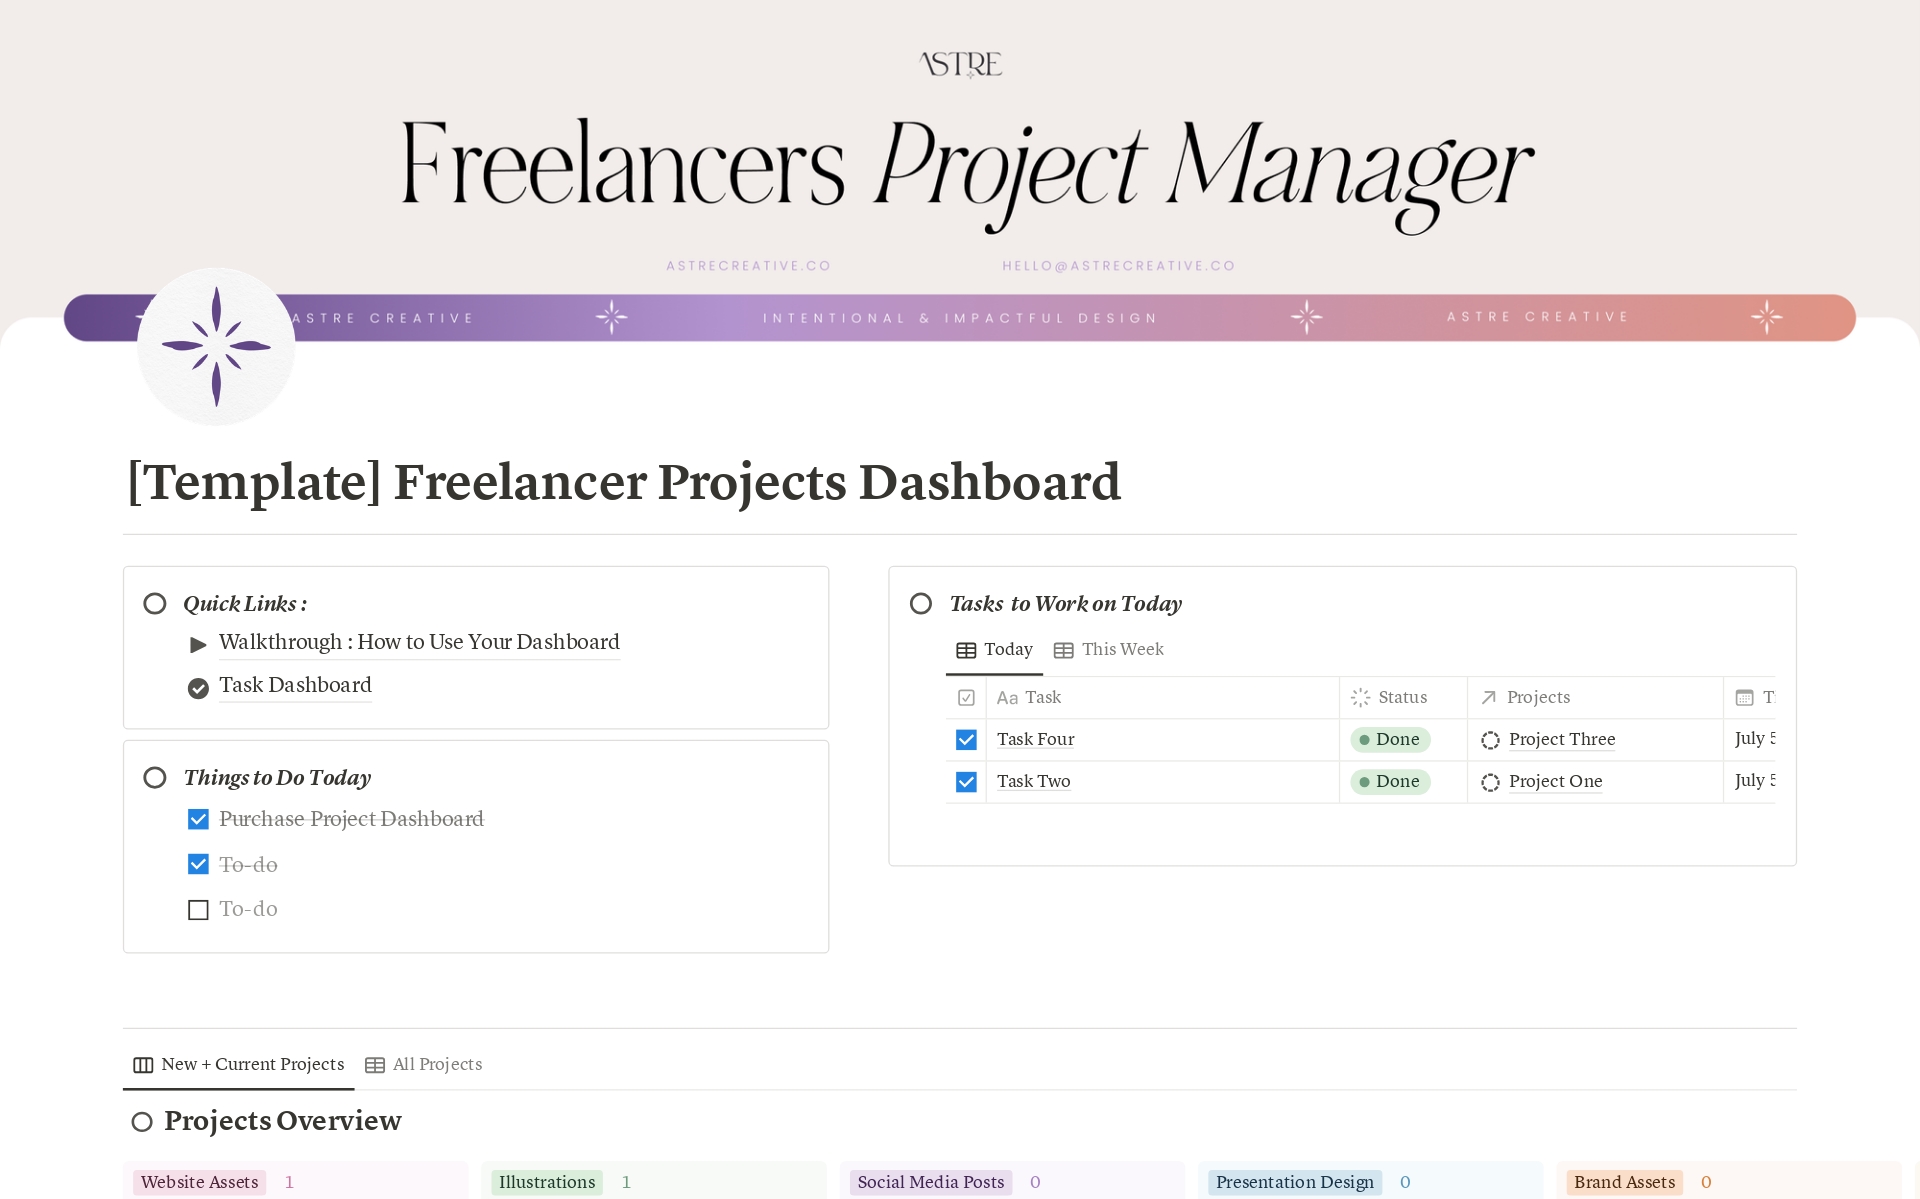 Vista previa de una plantilla para Freelancer's Project Manager